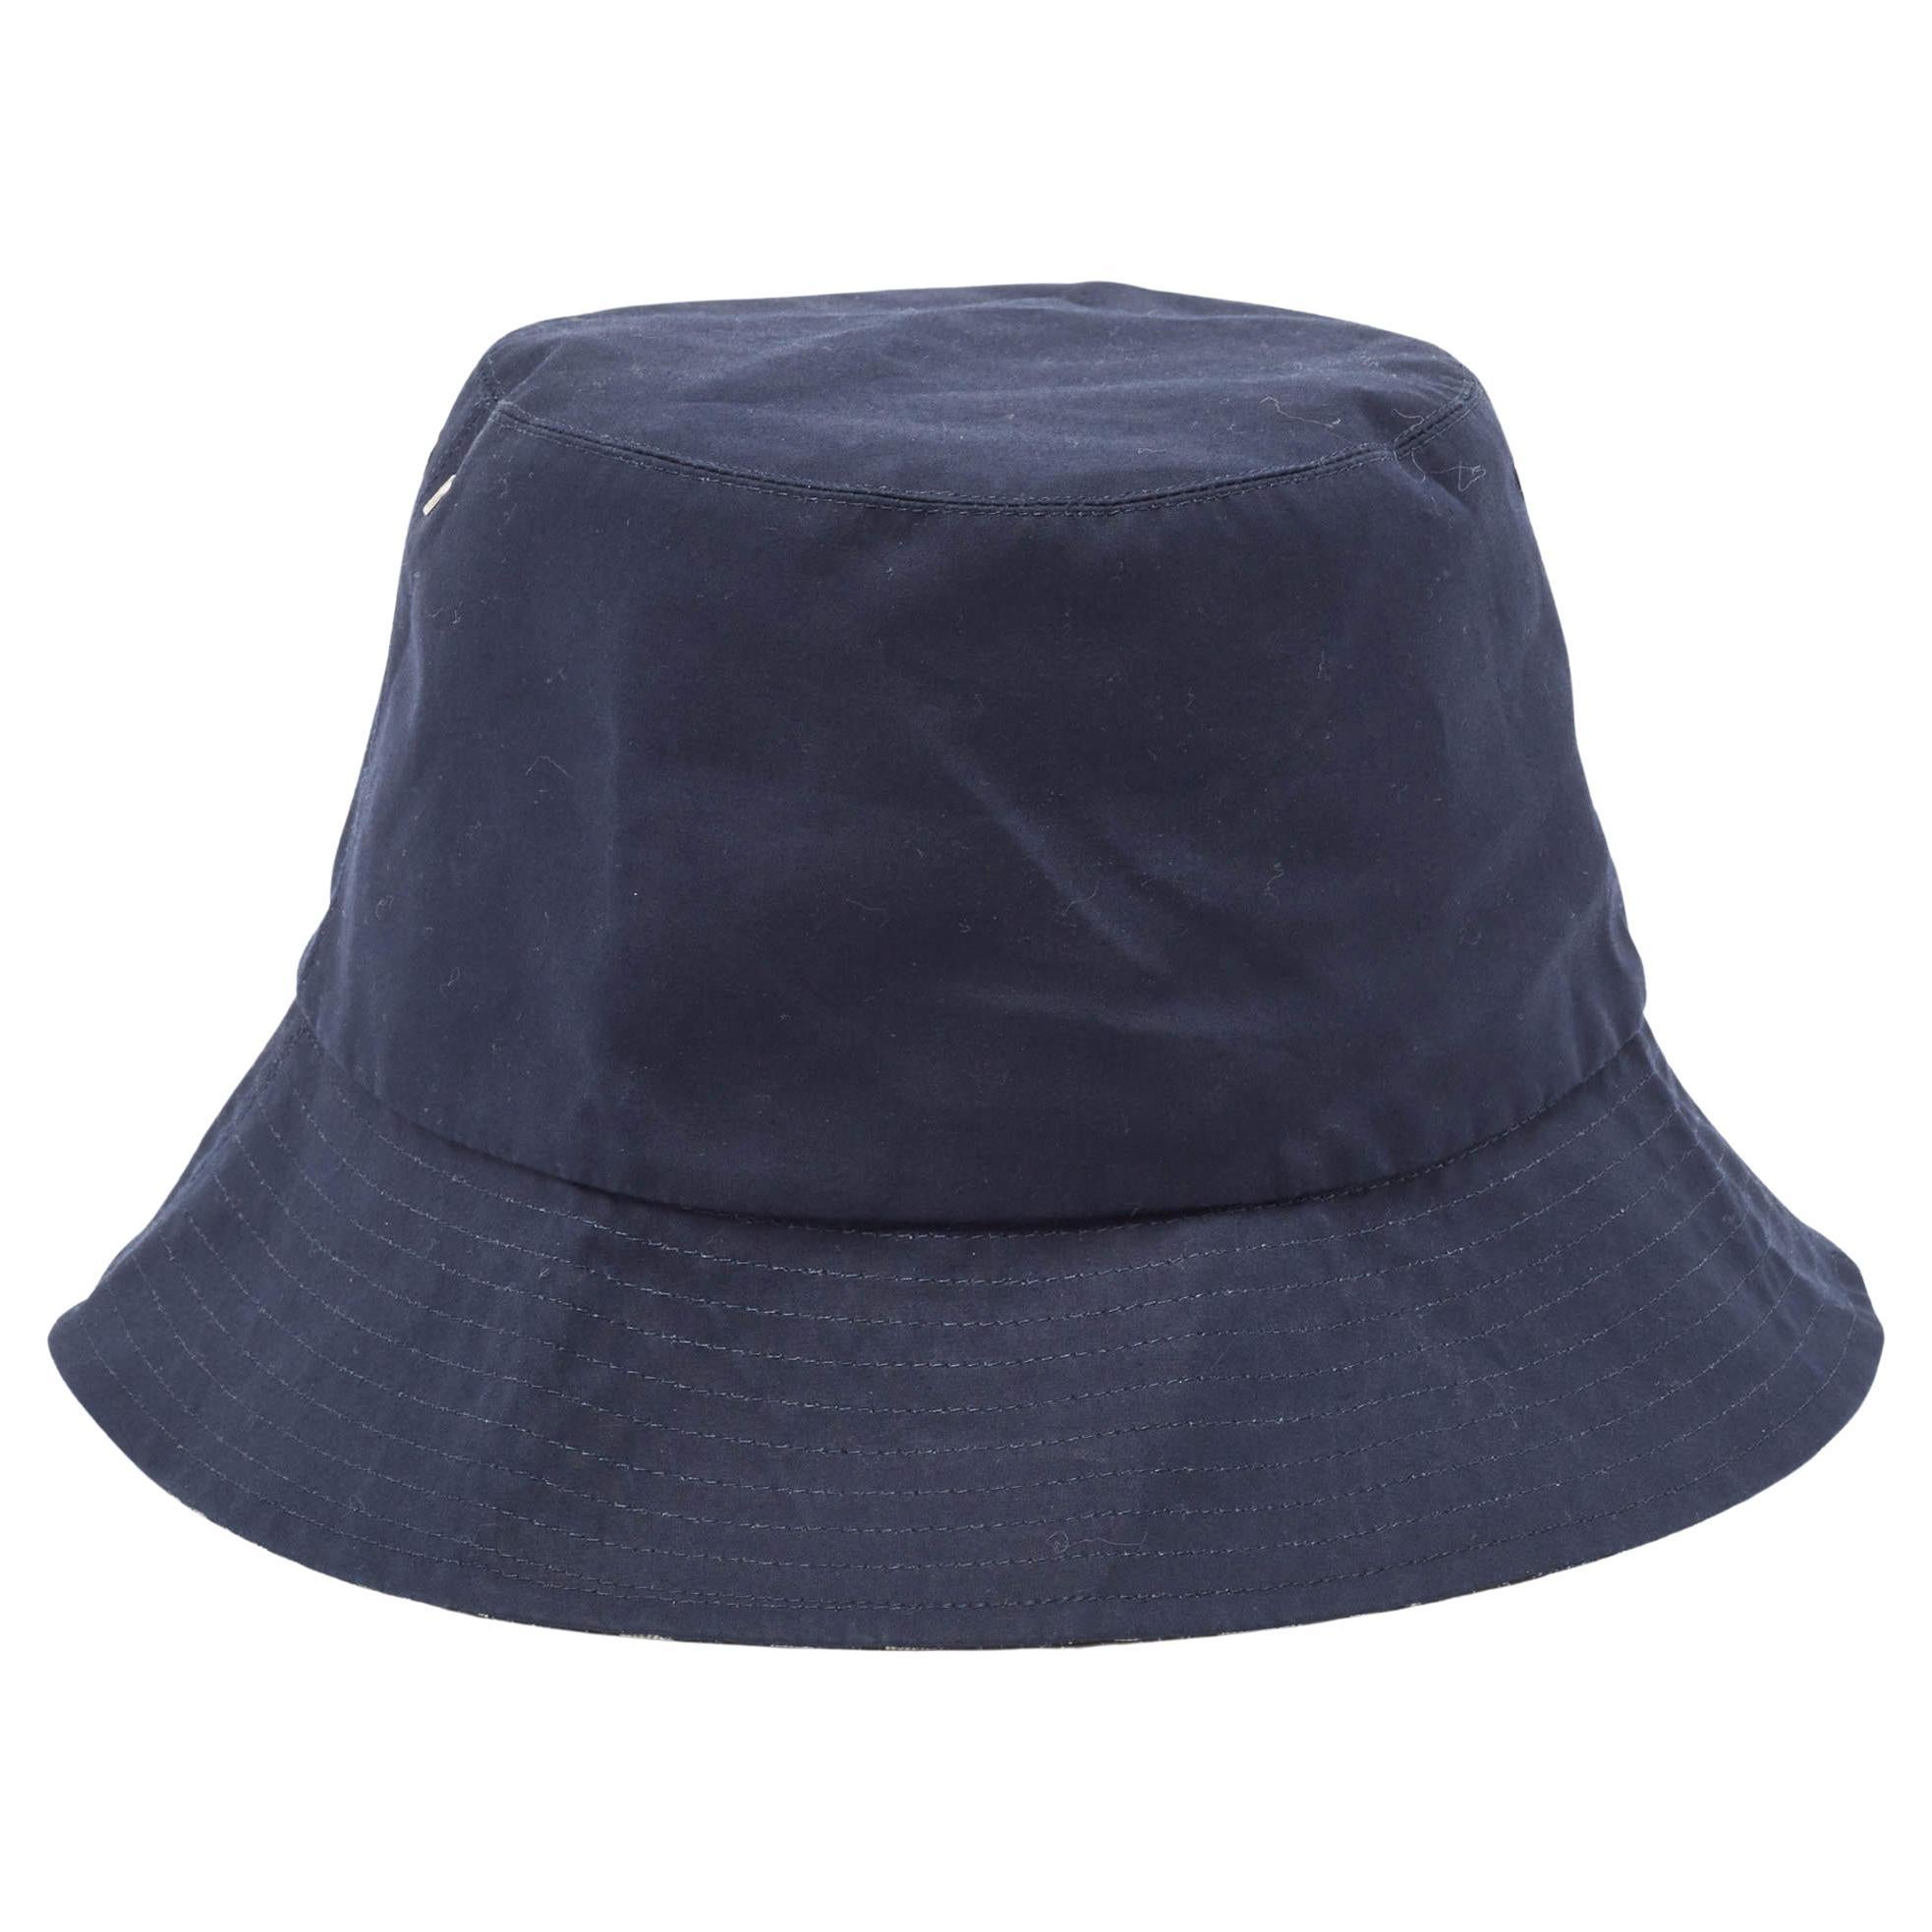 Dior, chapeau seau bleu marine oblique réversible à bord en forme de sabot, taille 56